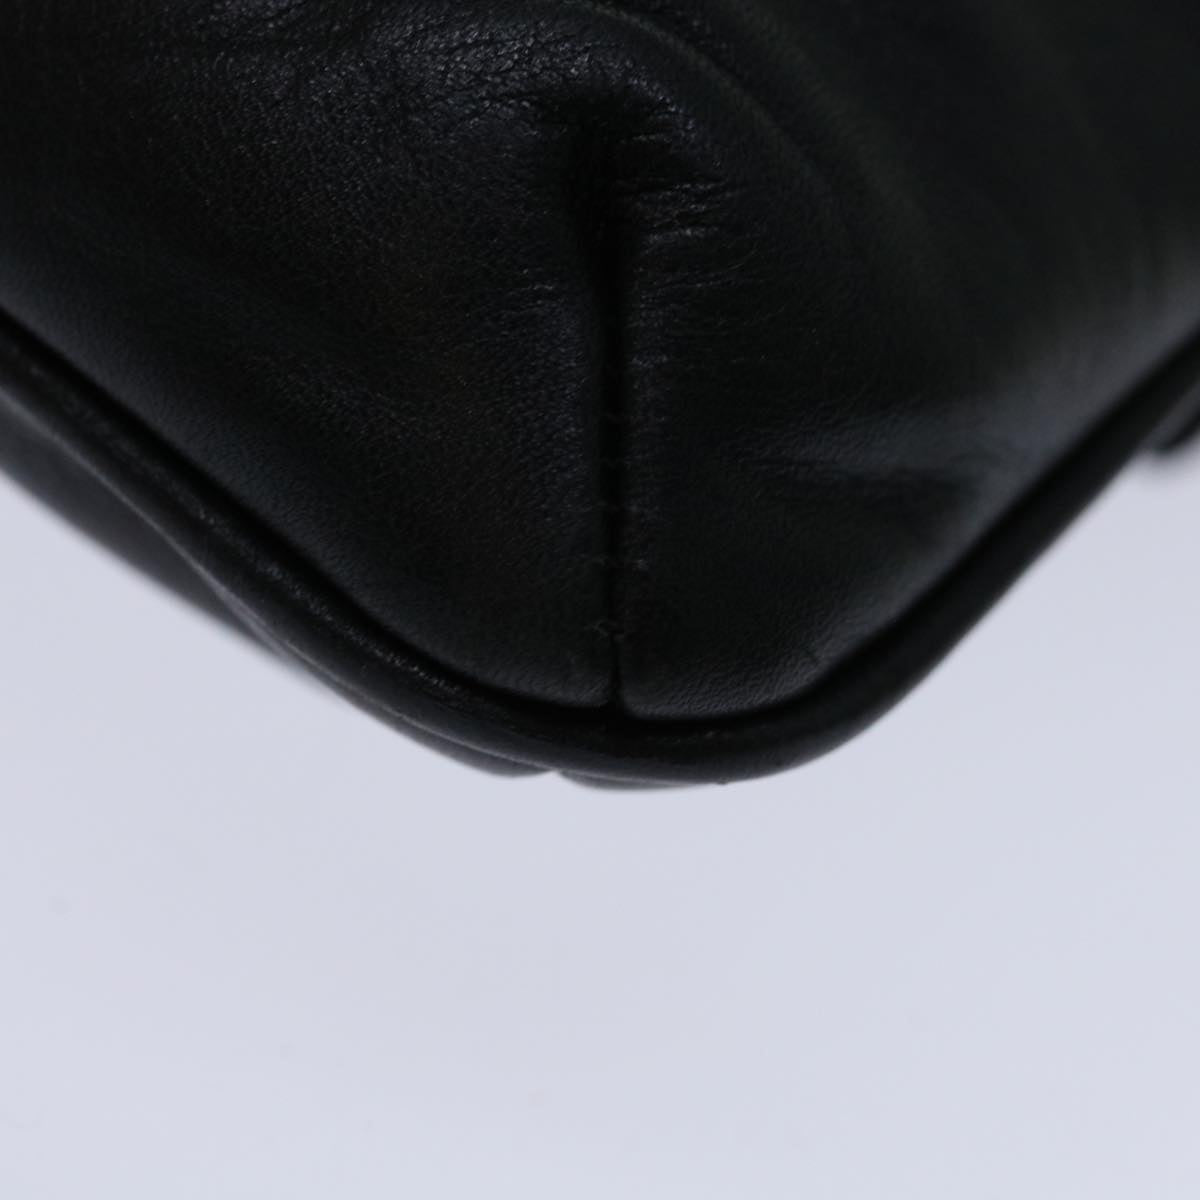 CELINE Shoulder Bag Leather Black Auth yk11353